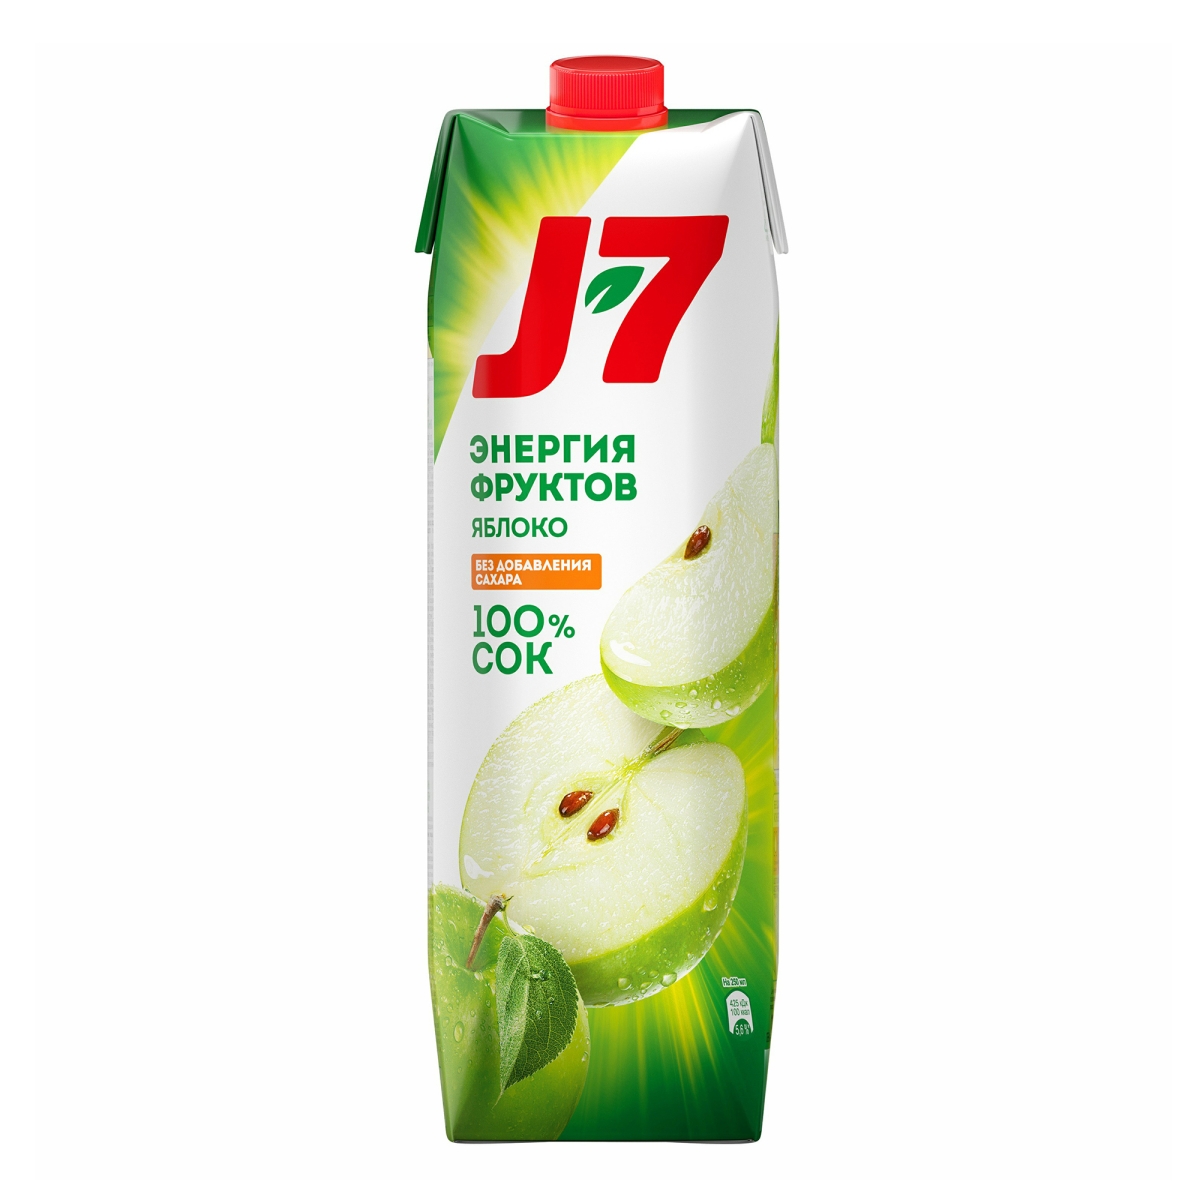 Сок J7 яблоко 1л